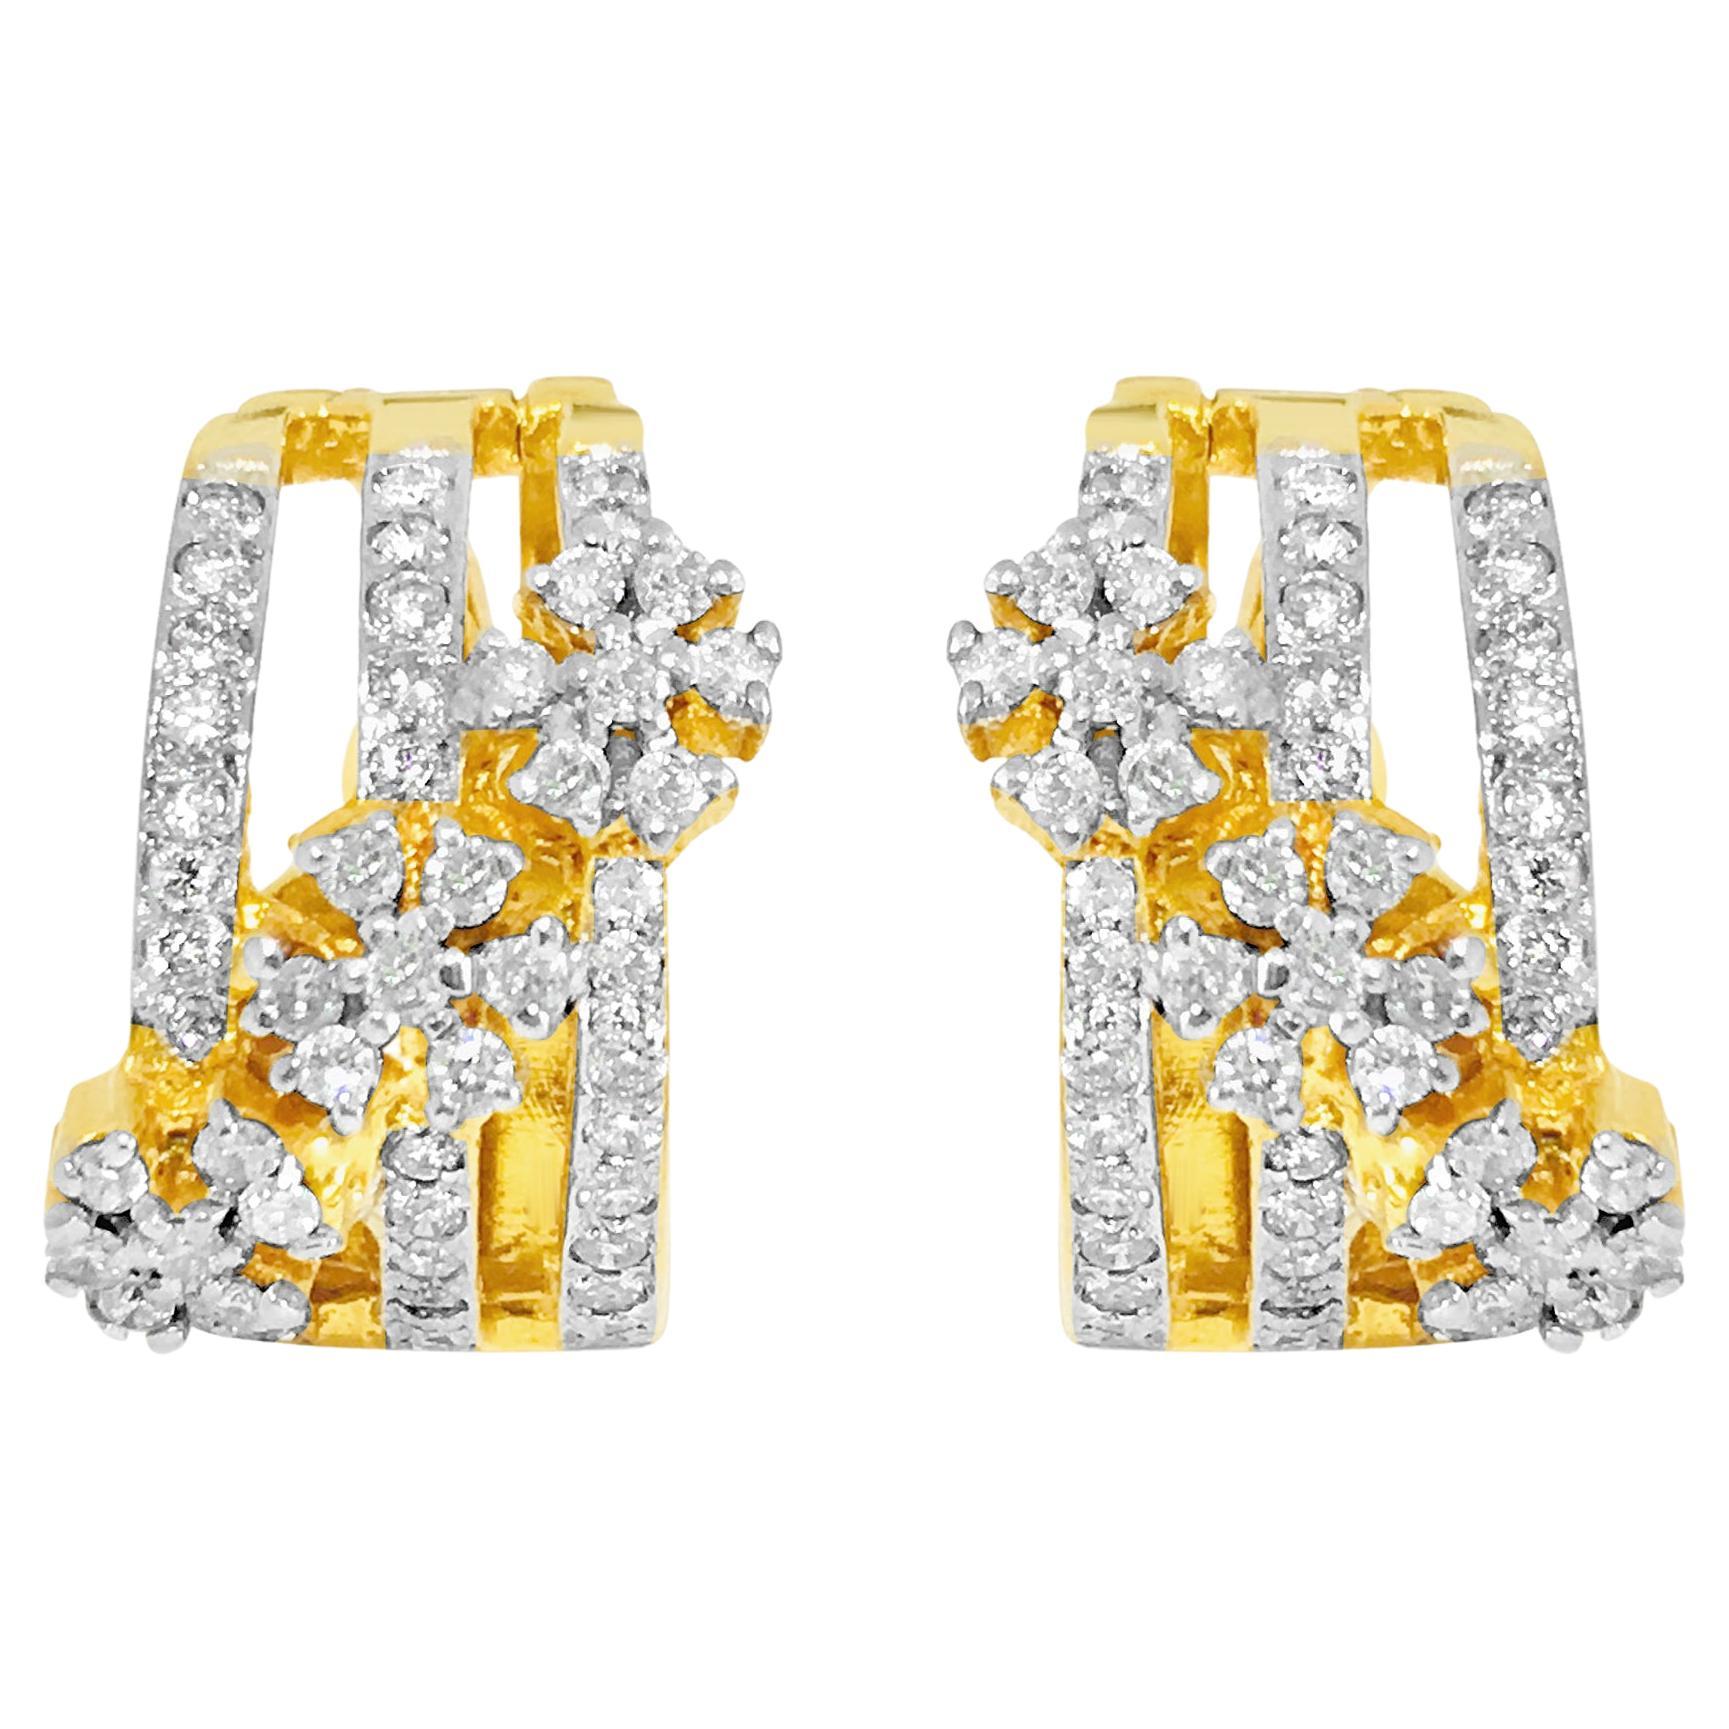 1.35 Carat Diamonds in 14k Yellow Gold Earrings.